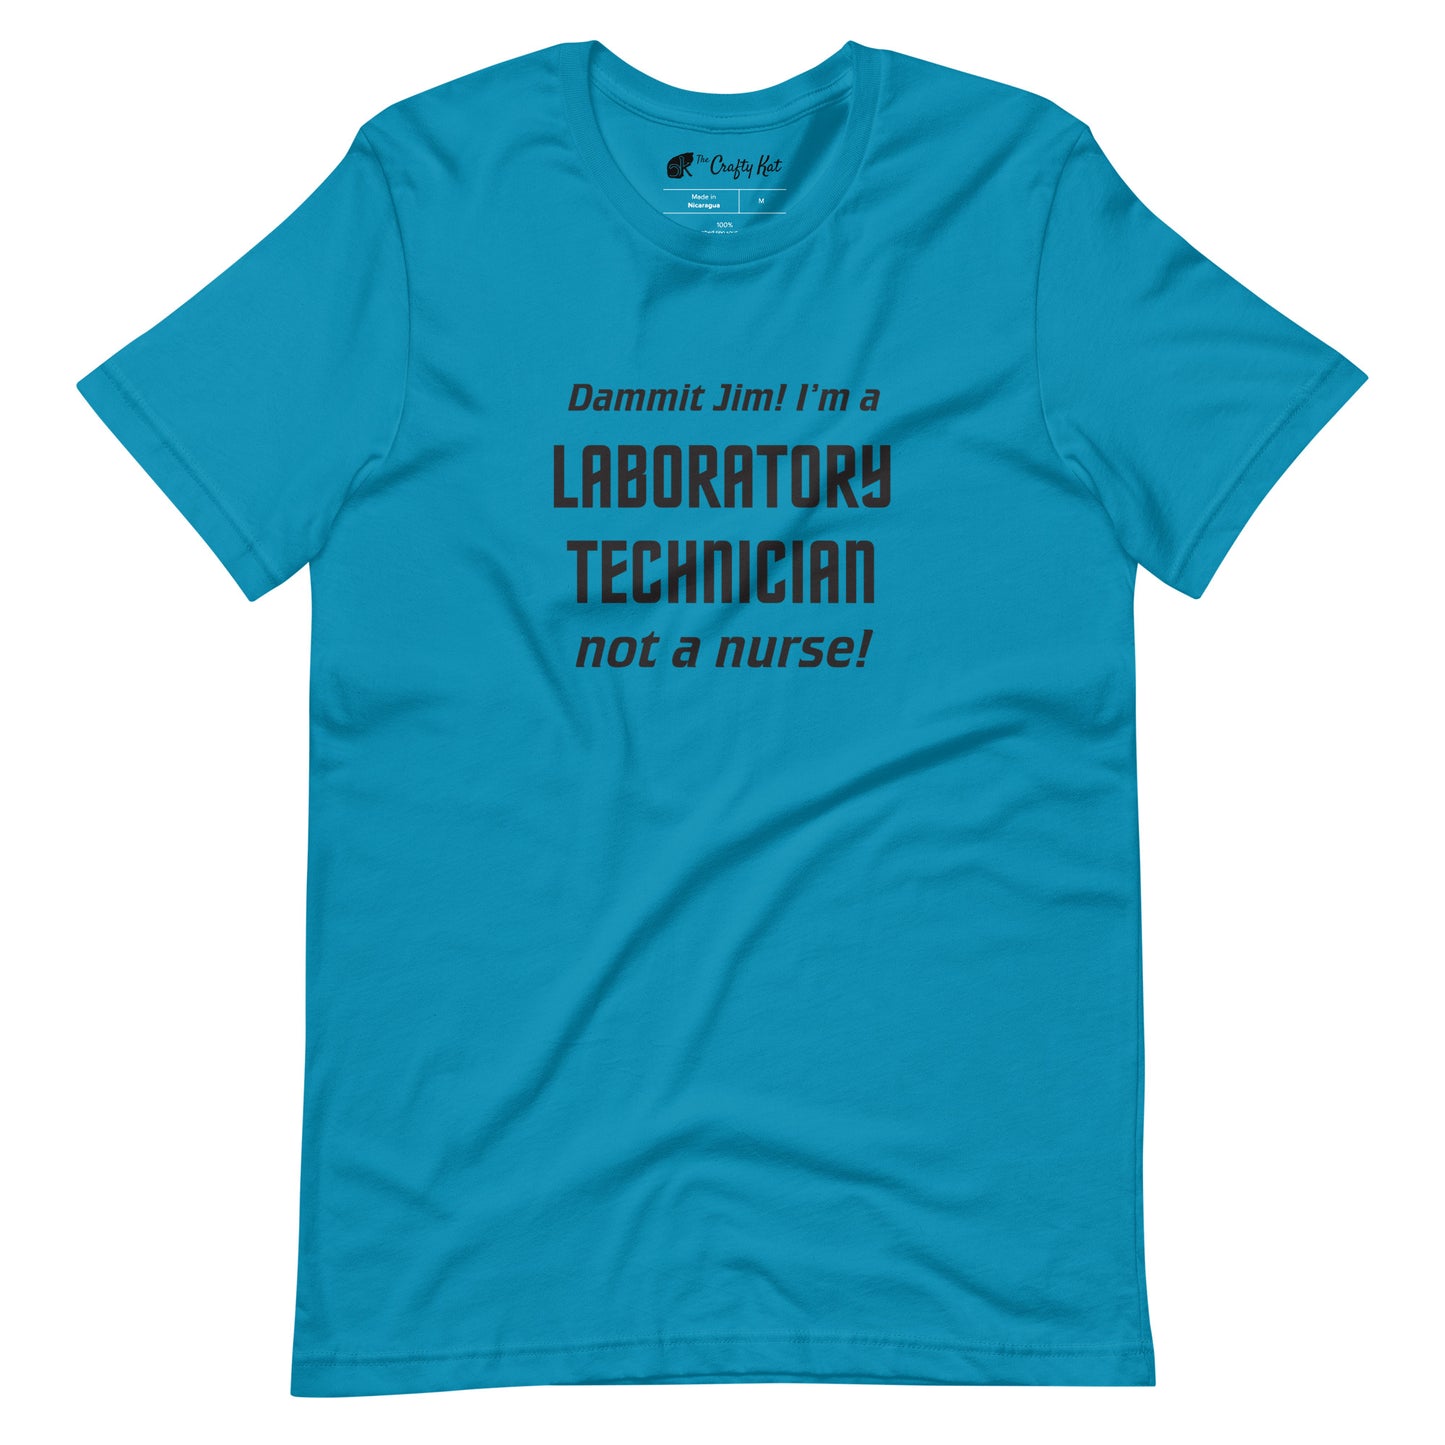 Aqua (cyan) t-shirt with text graphic in Star Trek font: "Dammit Jim! I'm a LABORATORY TECHNICIAN not a nurse!"